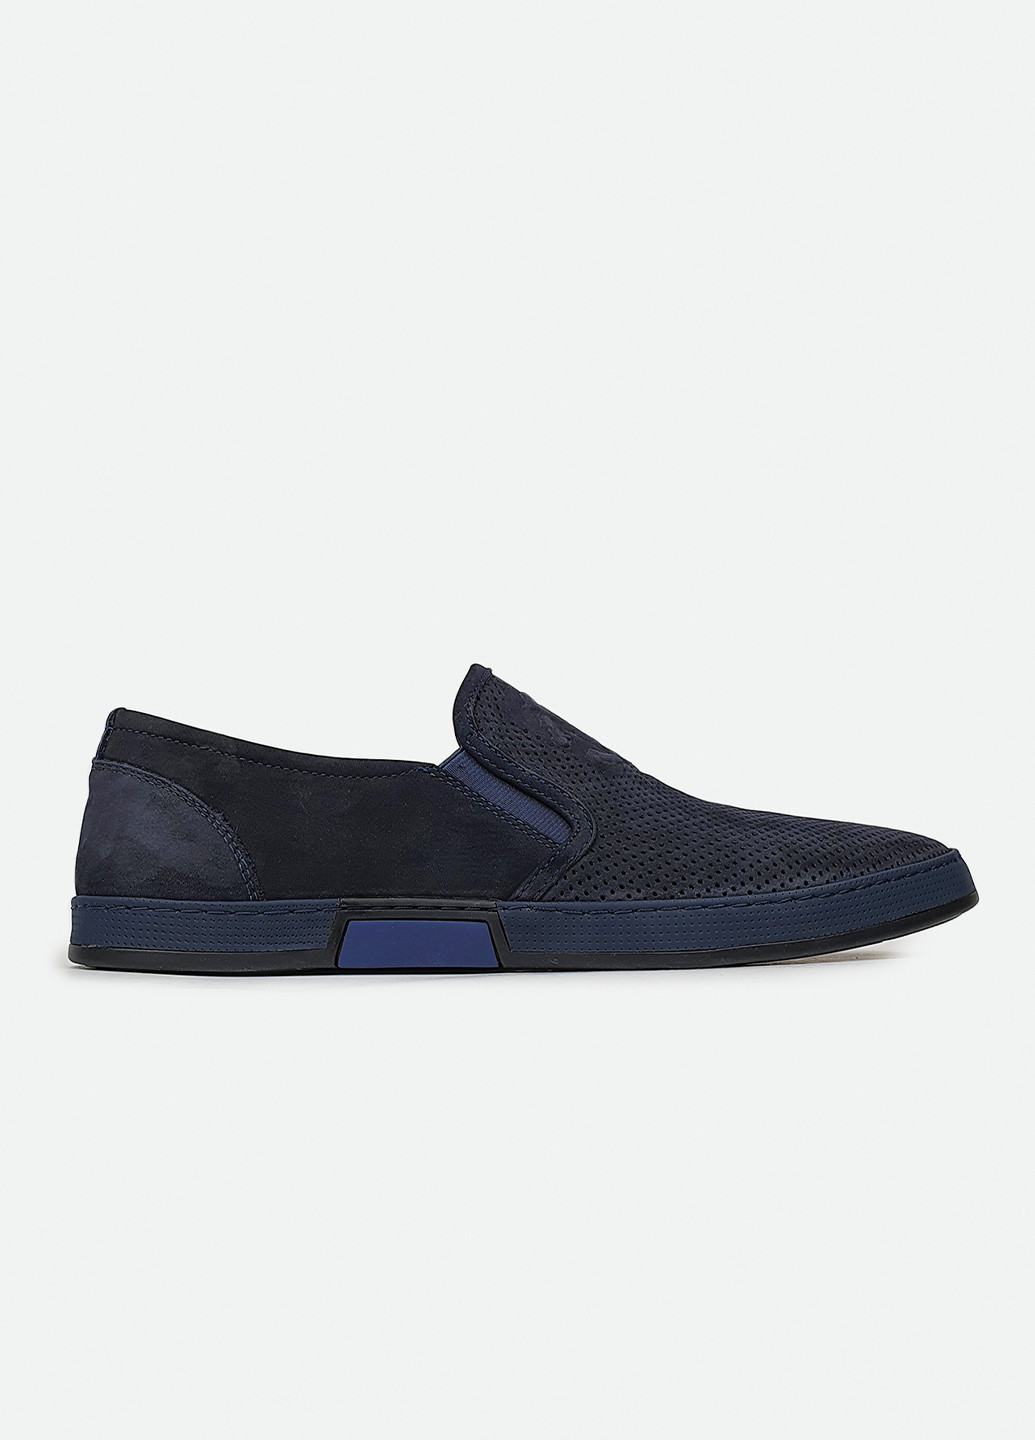 Синие летние мужские туфли перфорация без шнурков темно-синий нубук 45 Cosottinni